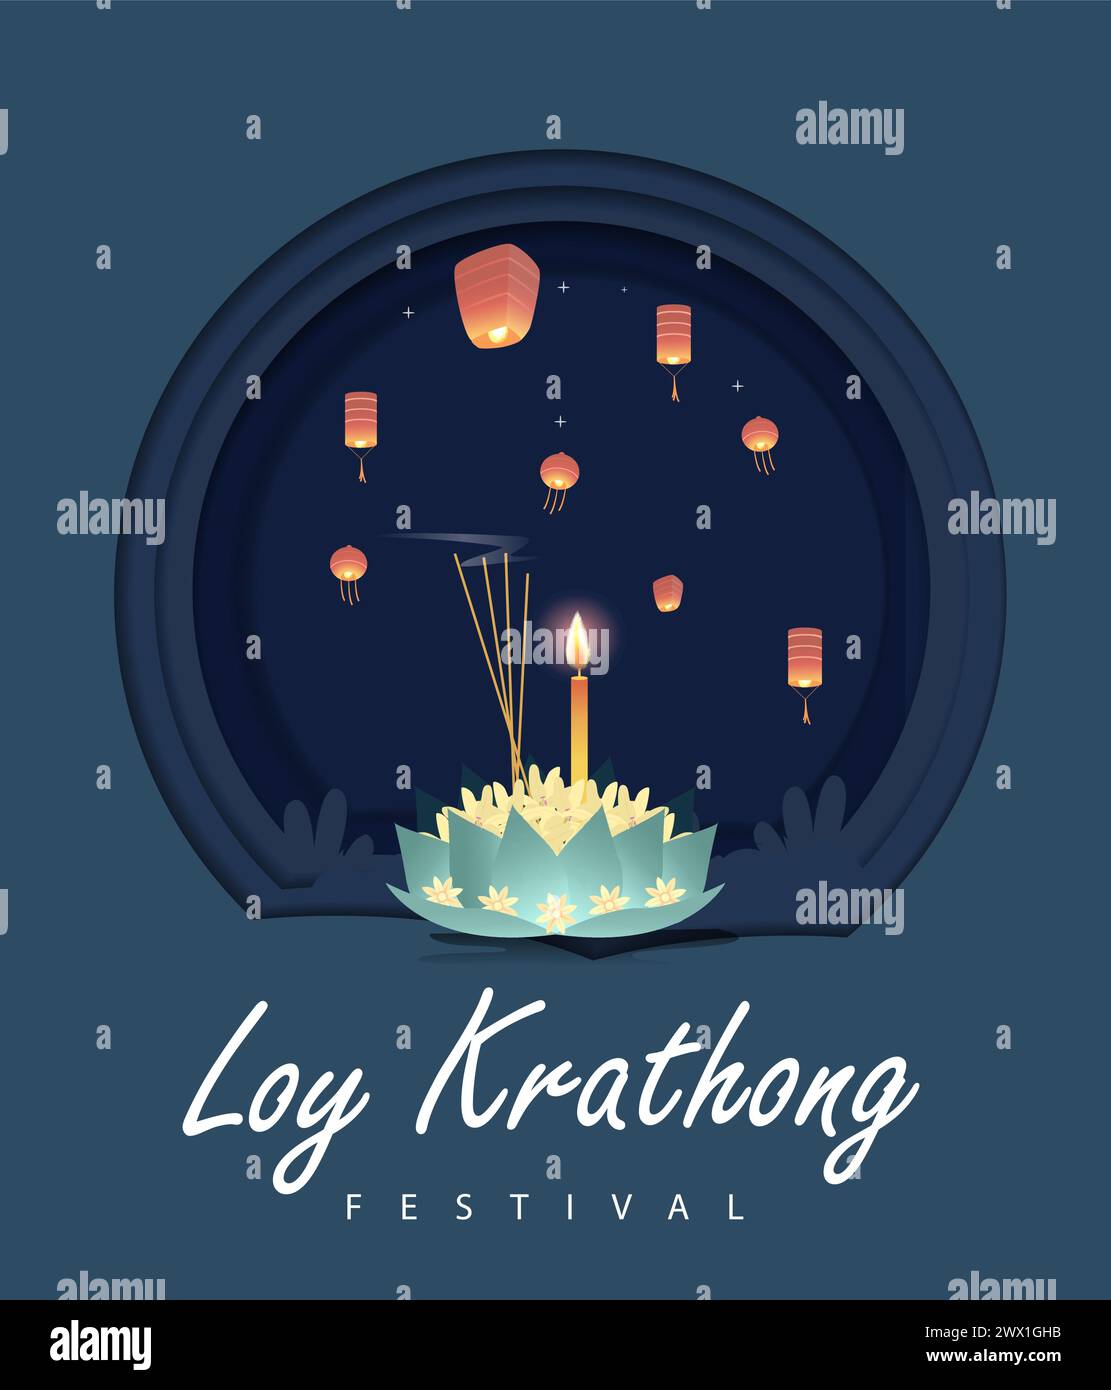 Loy krathong Festival viaggi Thailandia poster Design sfondo illustrazione vettoriale. Luogo sacro del fiume Chao Phraya in Thailandia sullo sfondo. Illustrazione Vettoriale